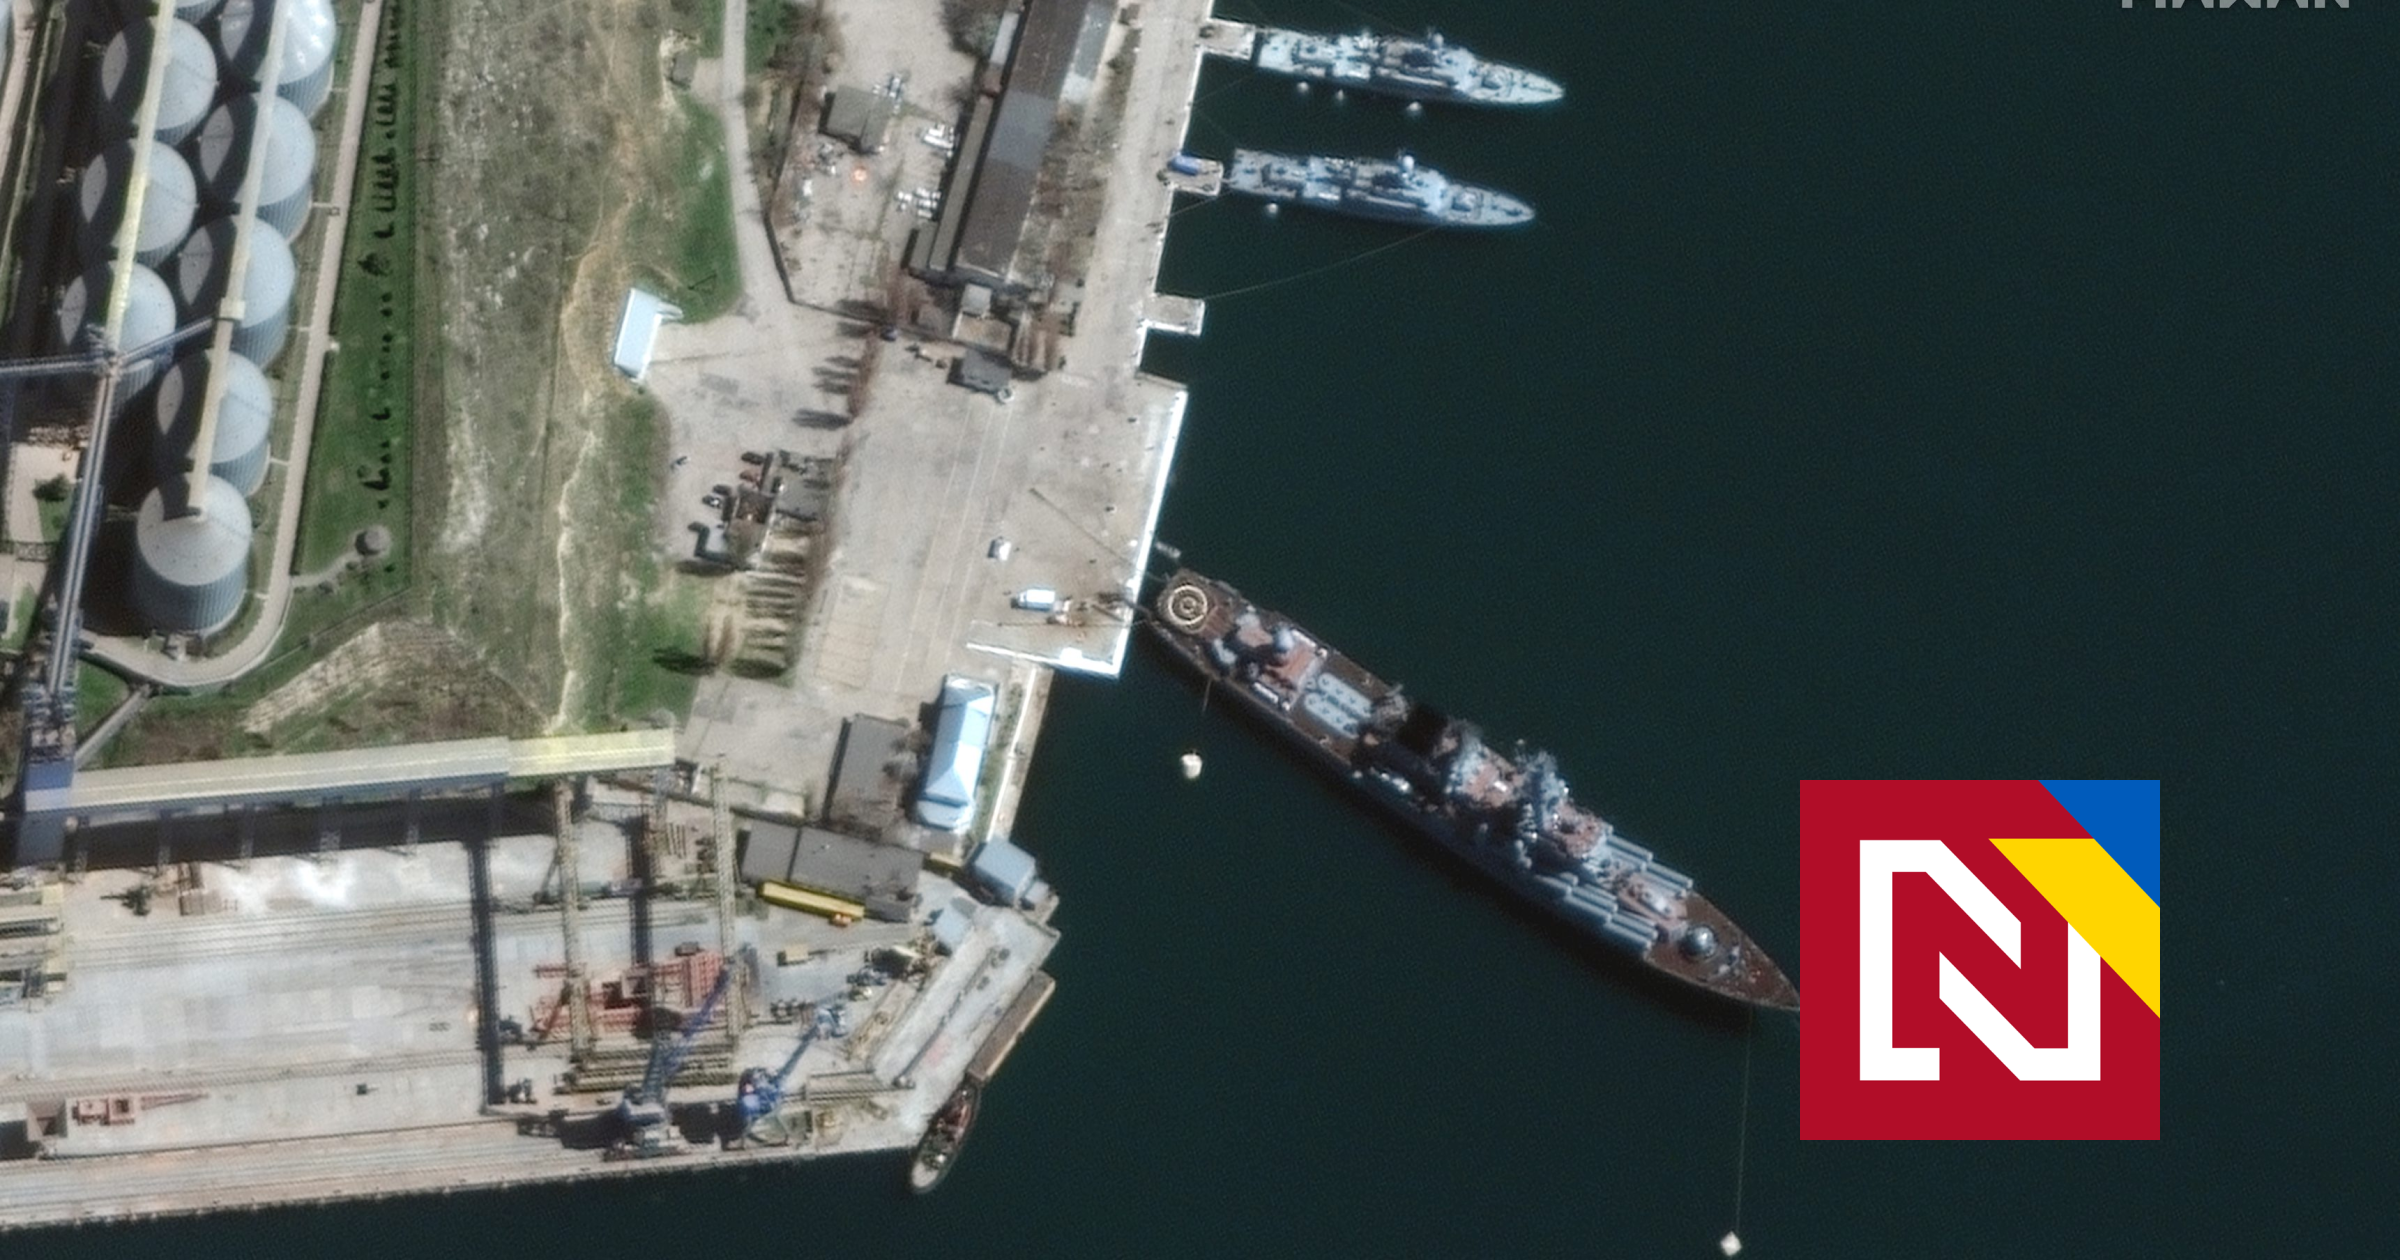 Honte russe.  Le croiseur phare de Moscou a coulé, a confirmé le ministère russe de la Défense